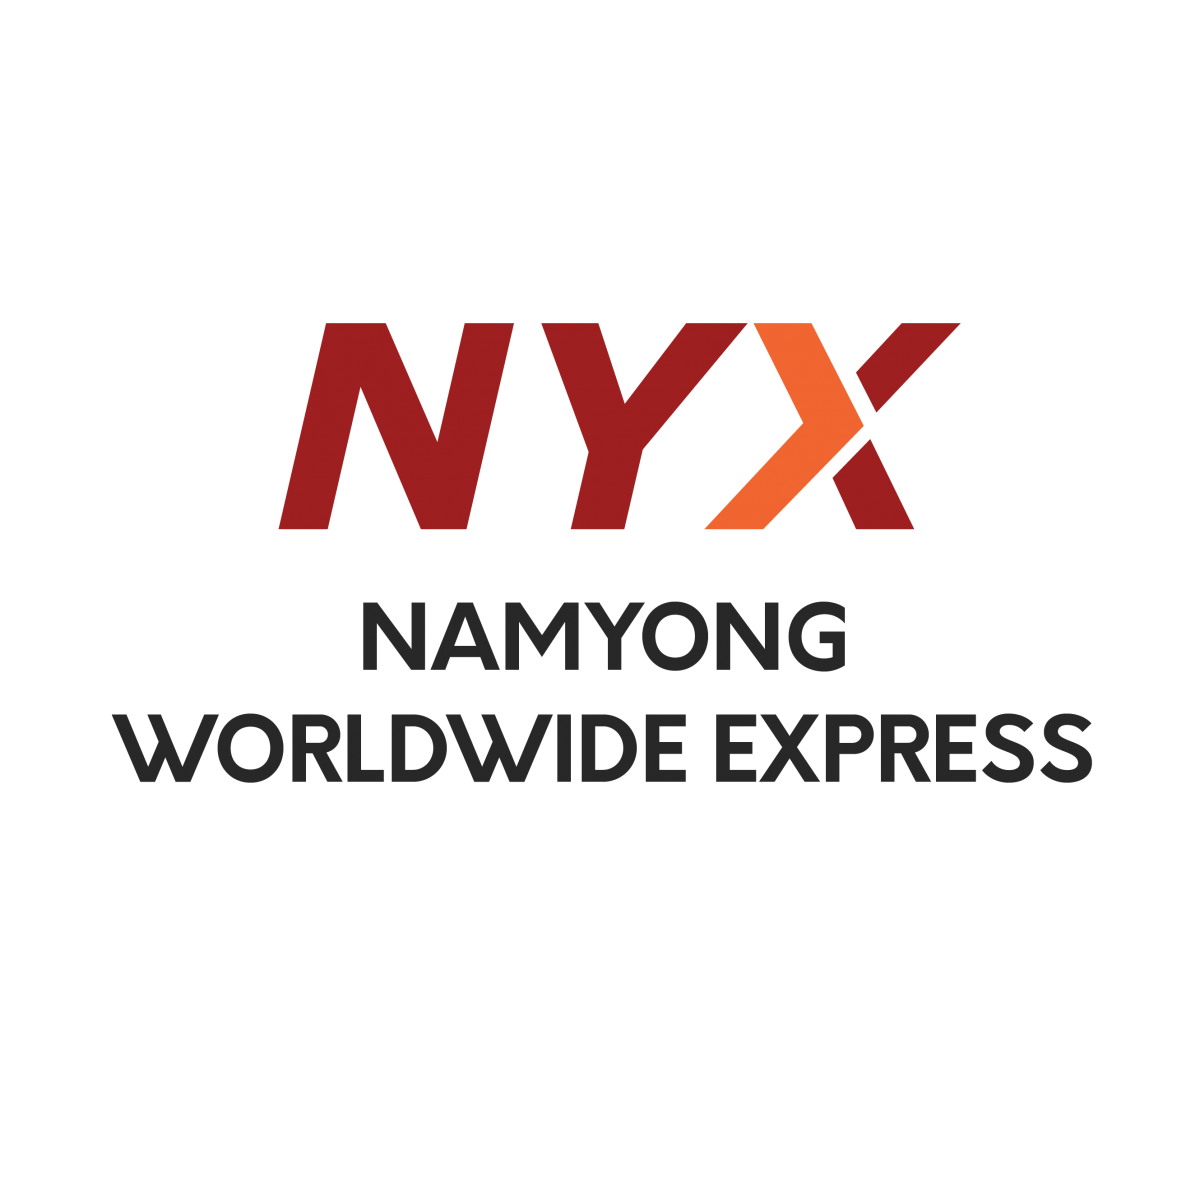 Namyong-Worldwide-Express-1200x1183.png